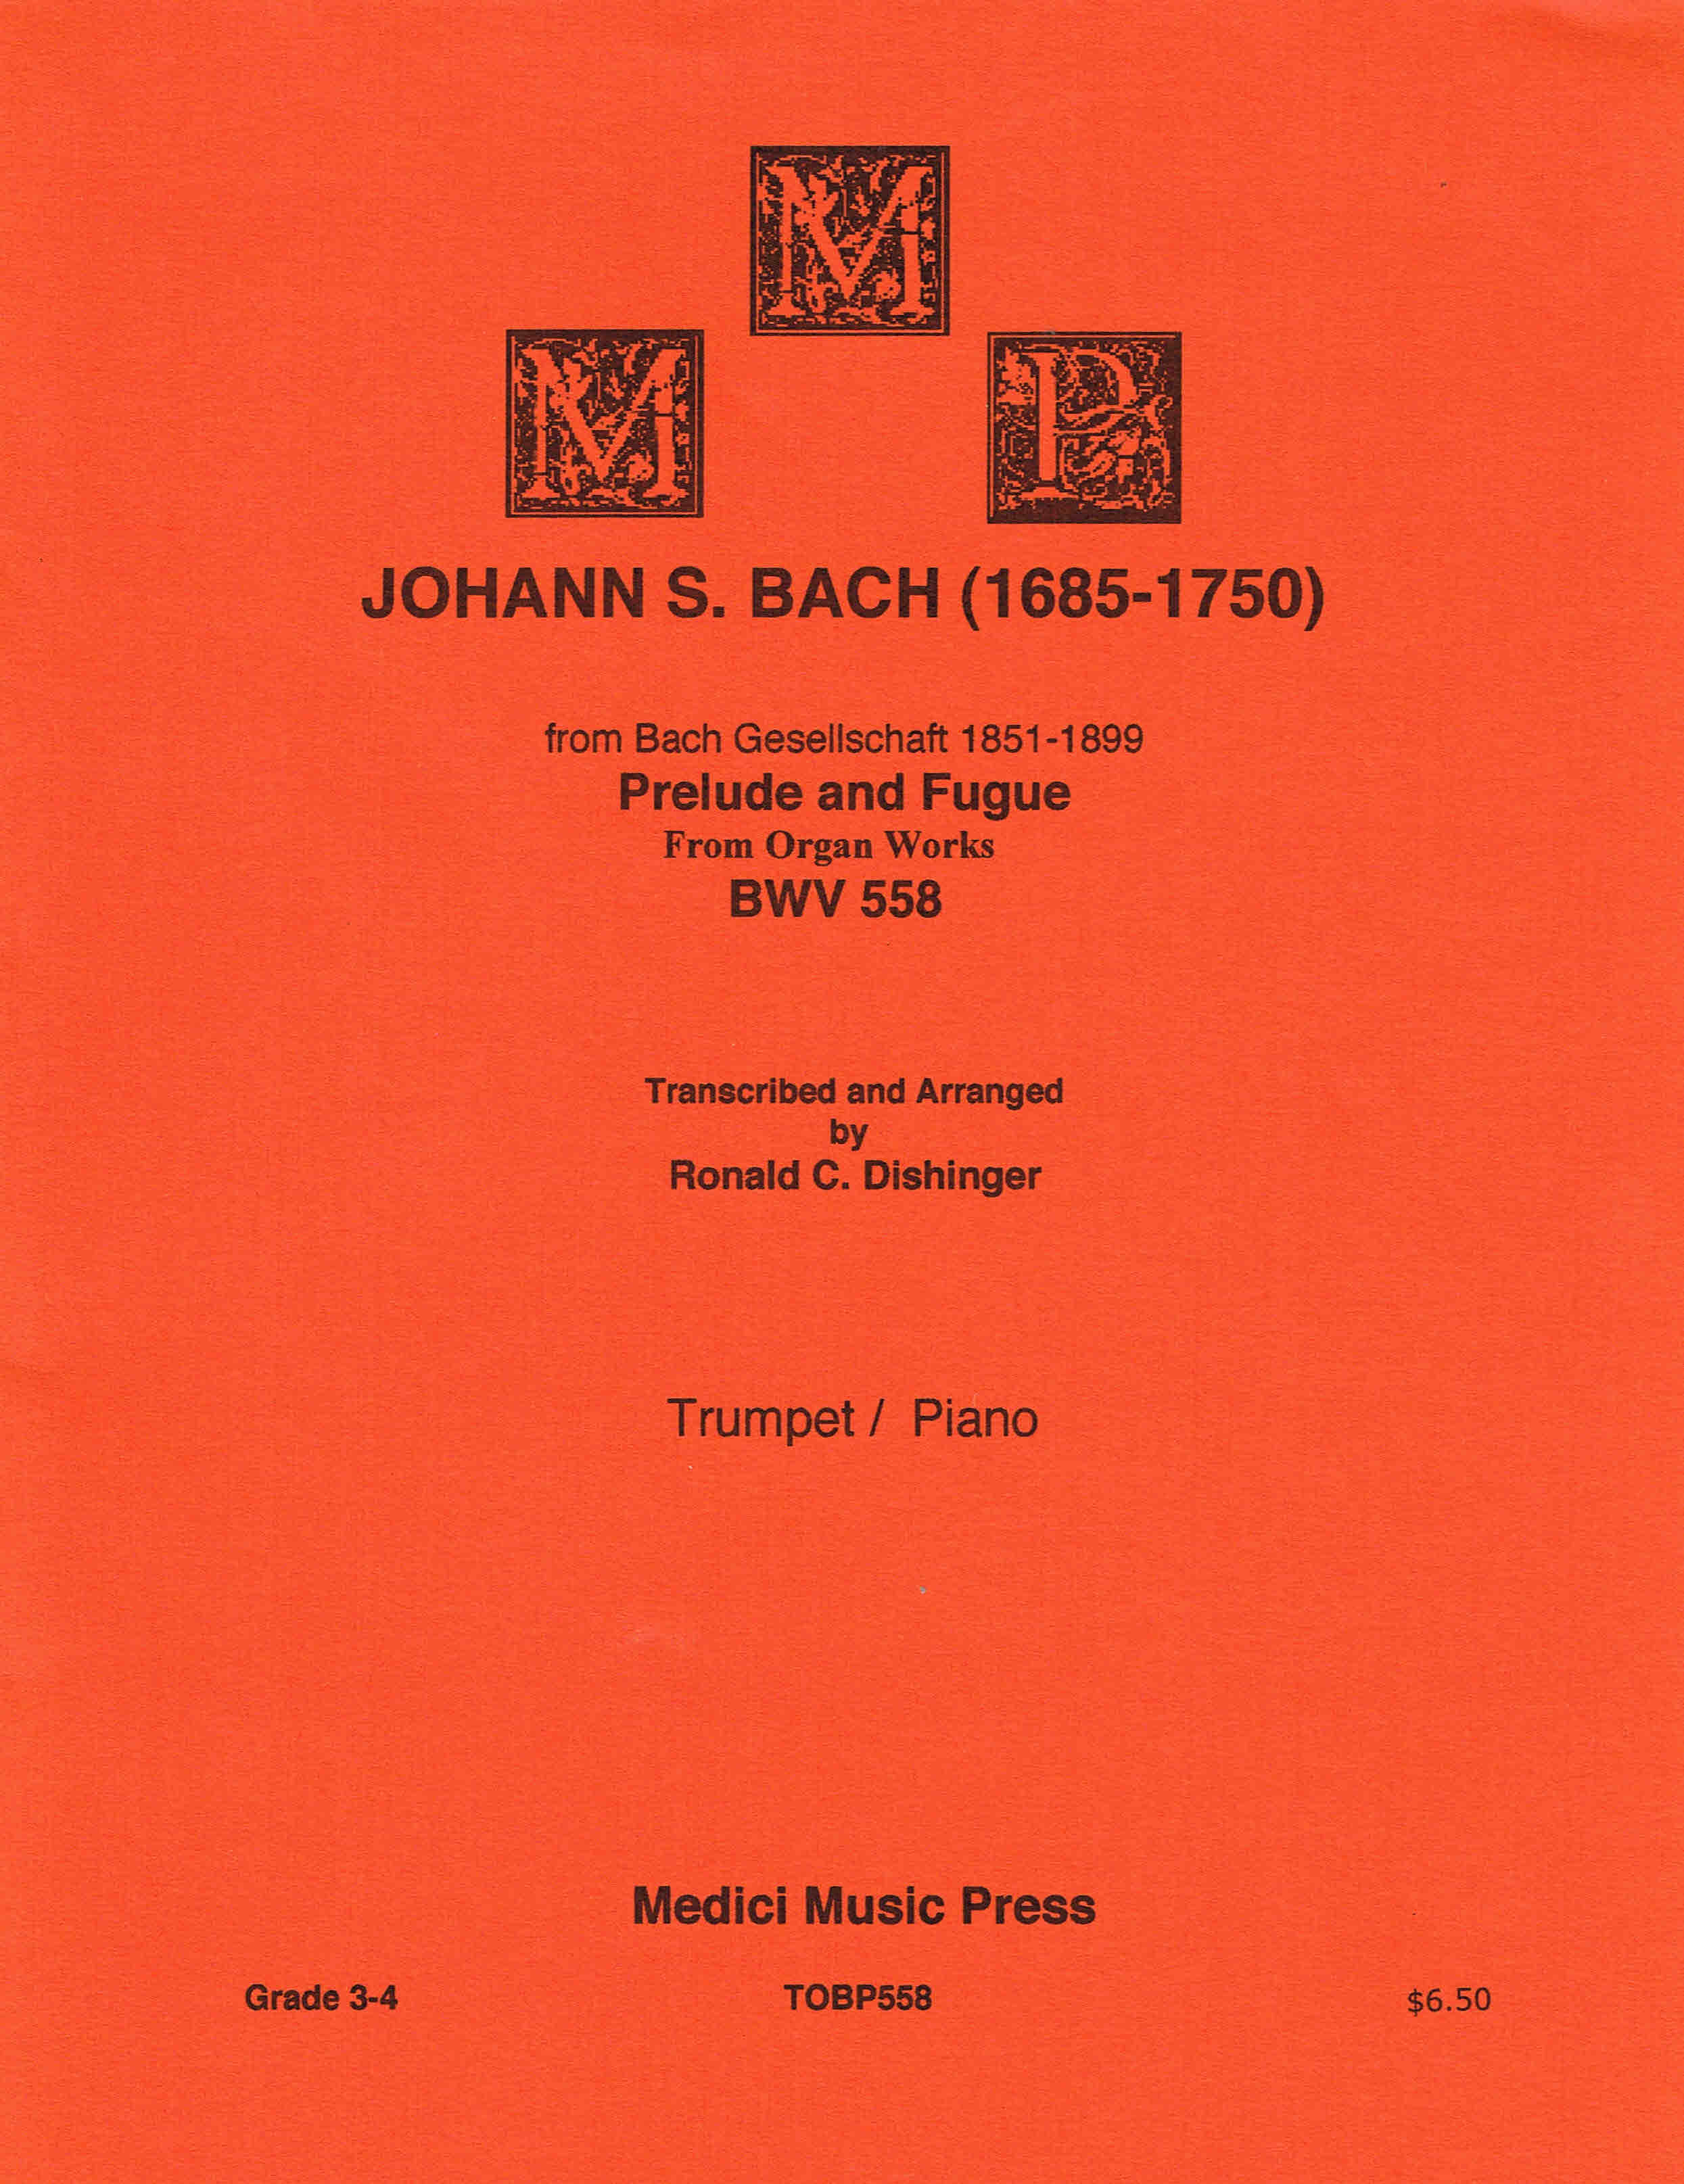 Johann S. Bach - Prélude et fugue des œuvres d'orgue BWV 558 pour trompette/piano.. - Photo 1 sur 1